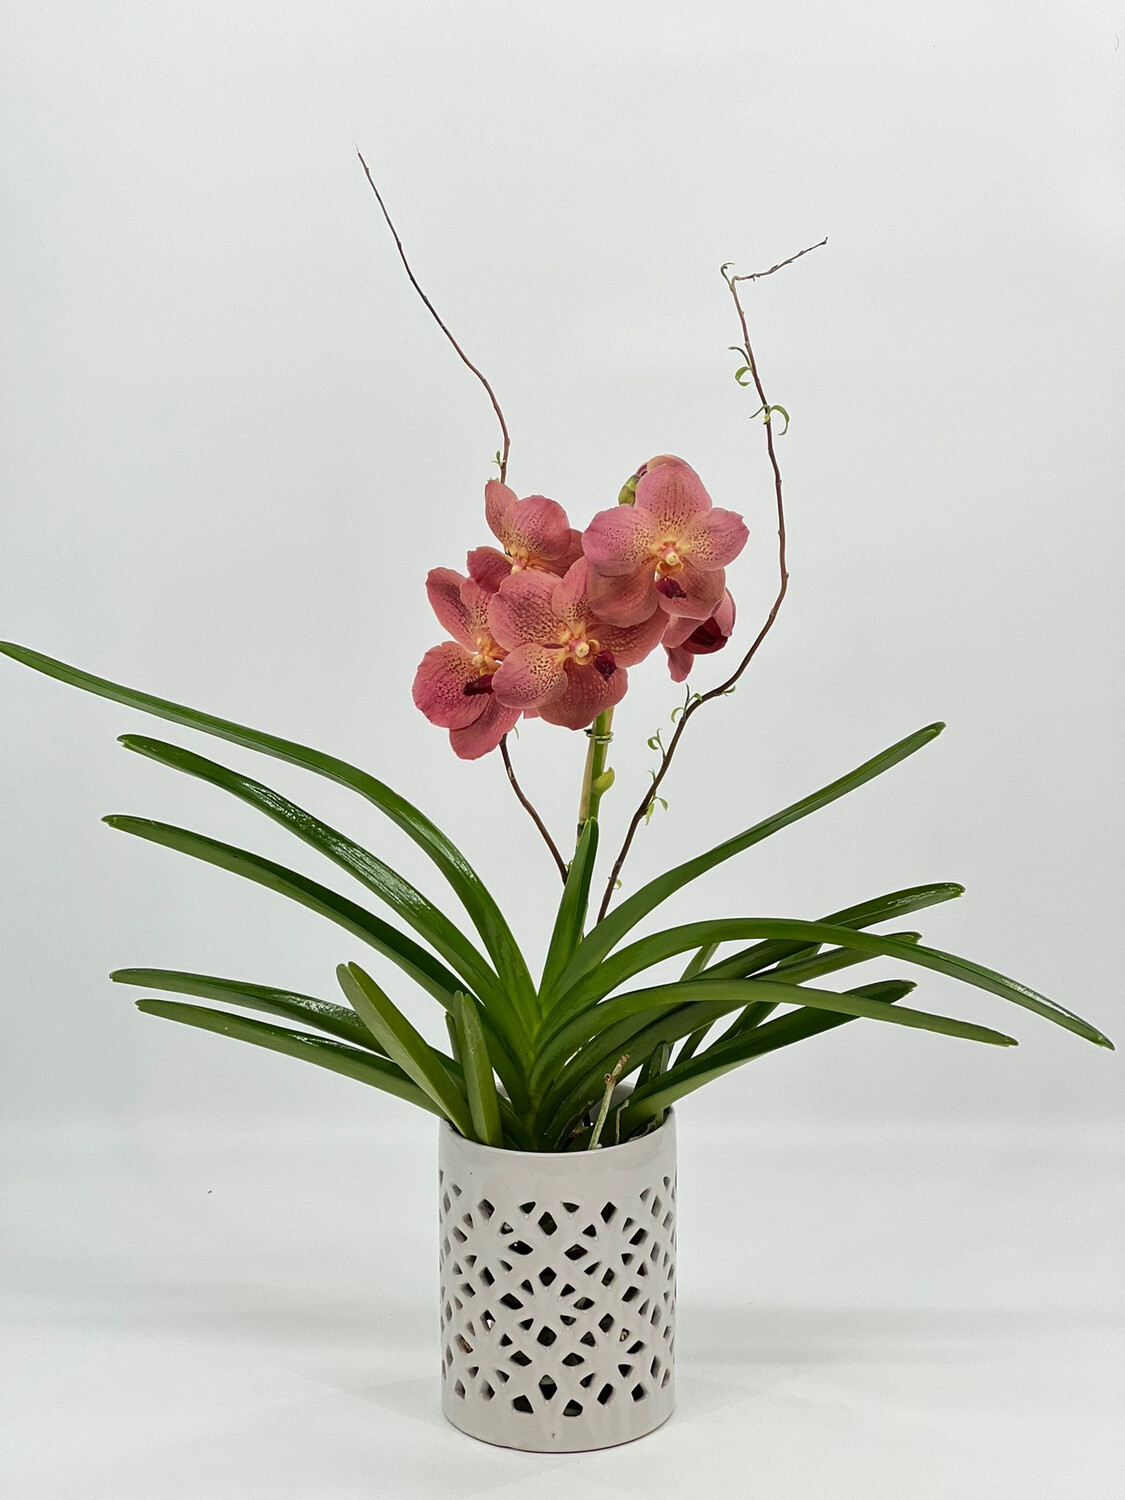 Vanda orchid Arrangements